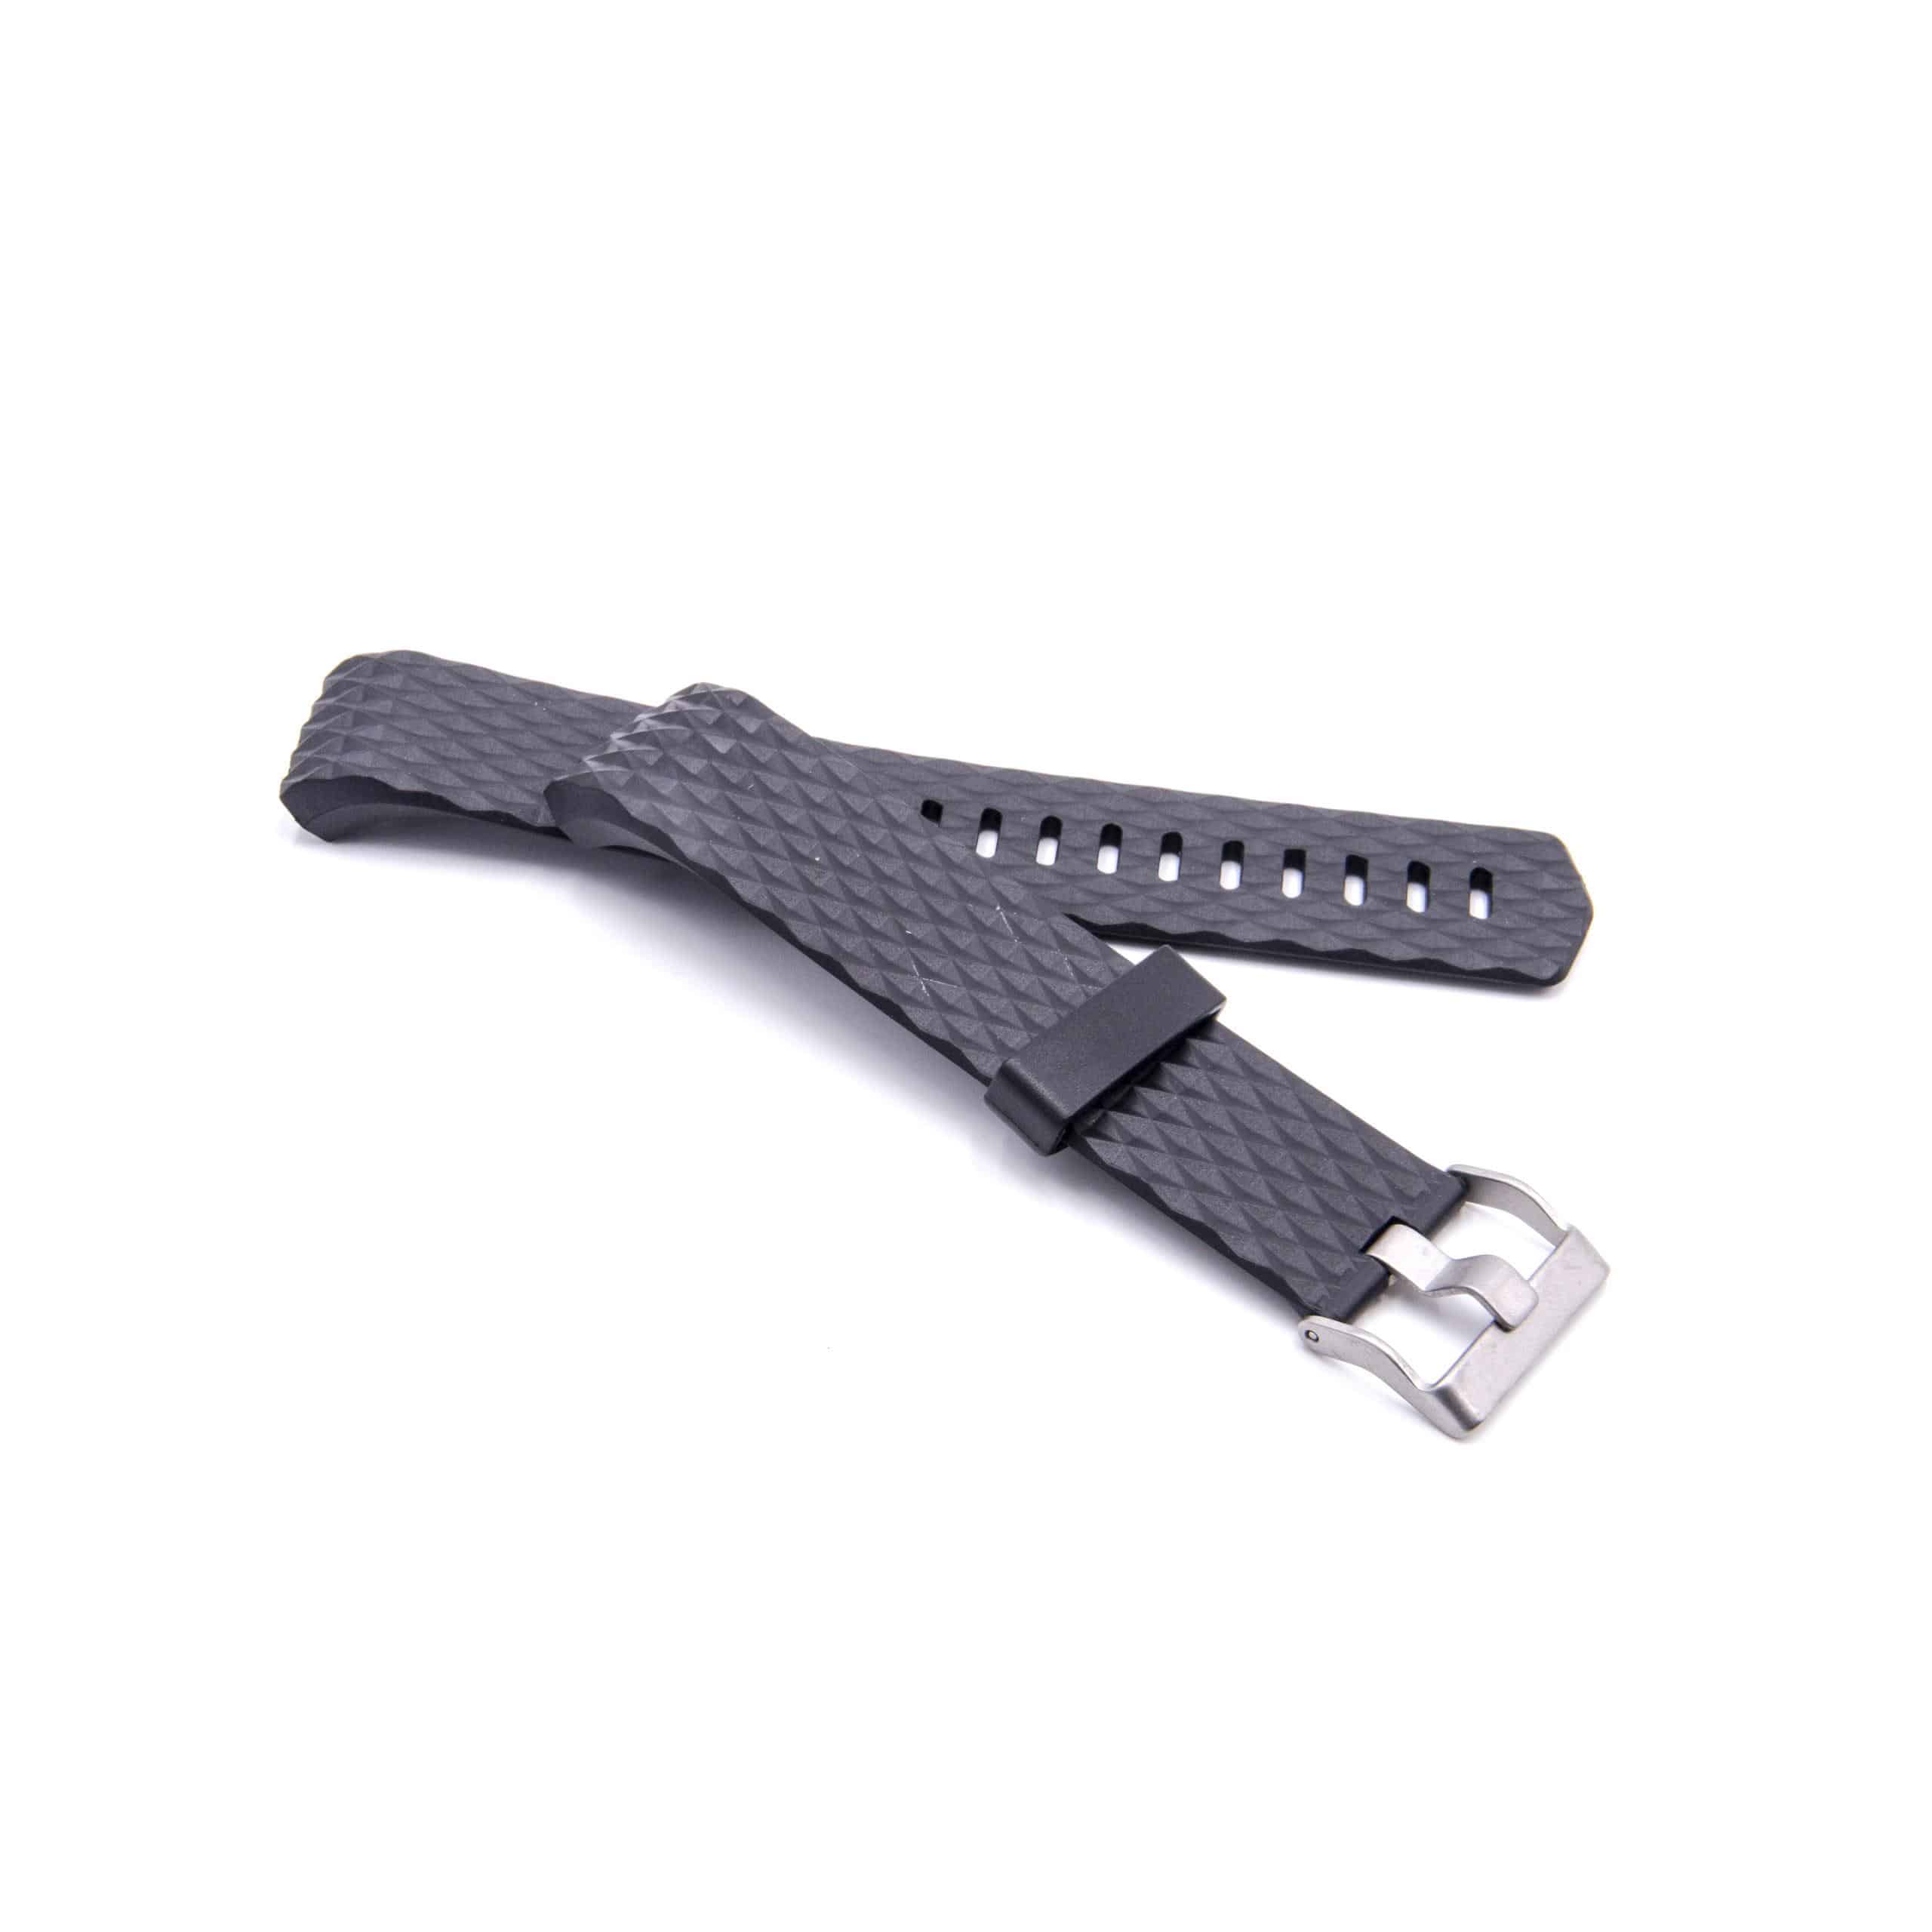 Armband für Fitbit Charge Smartwatch - 12,5cm + 9 cm lang, 21mm breit, schwarz